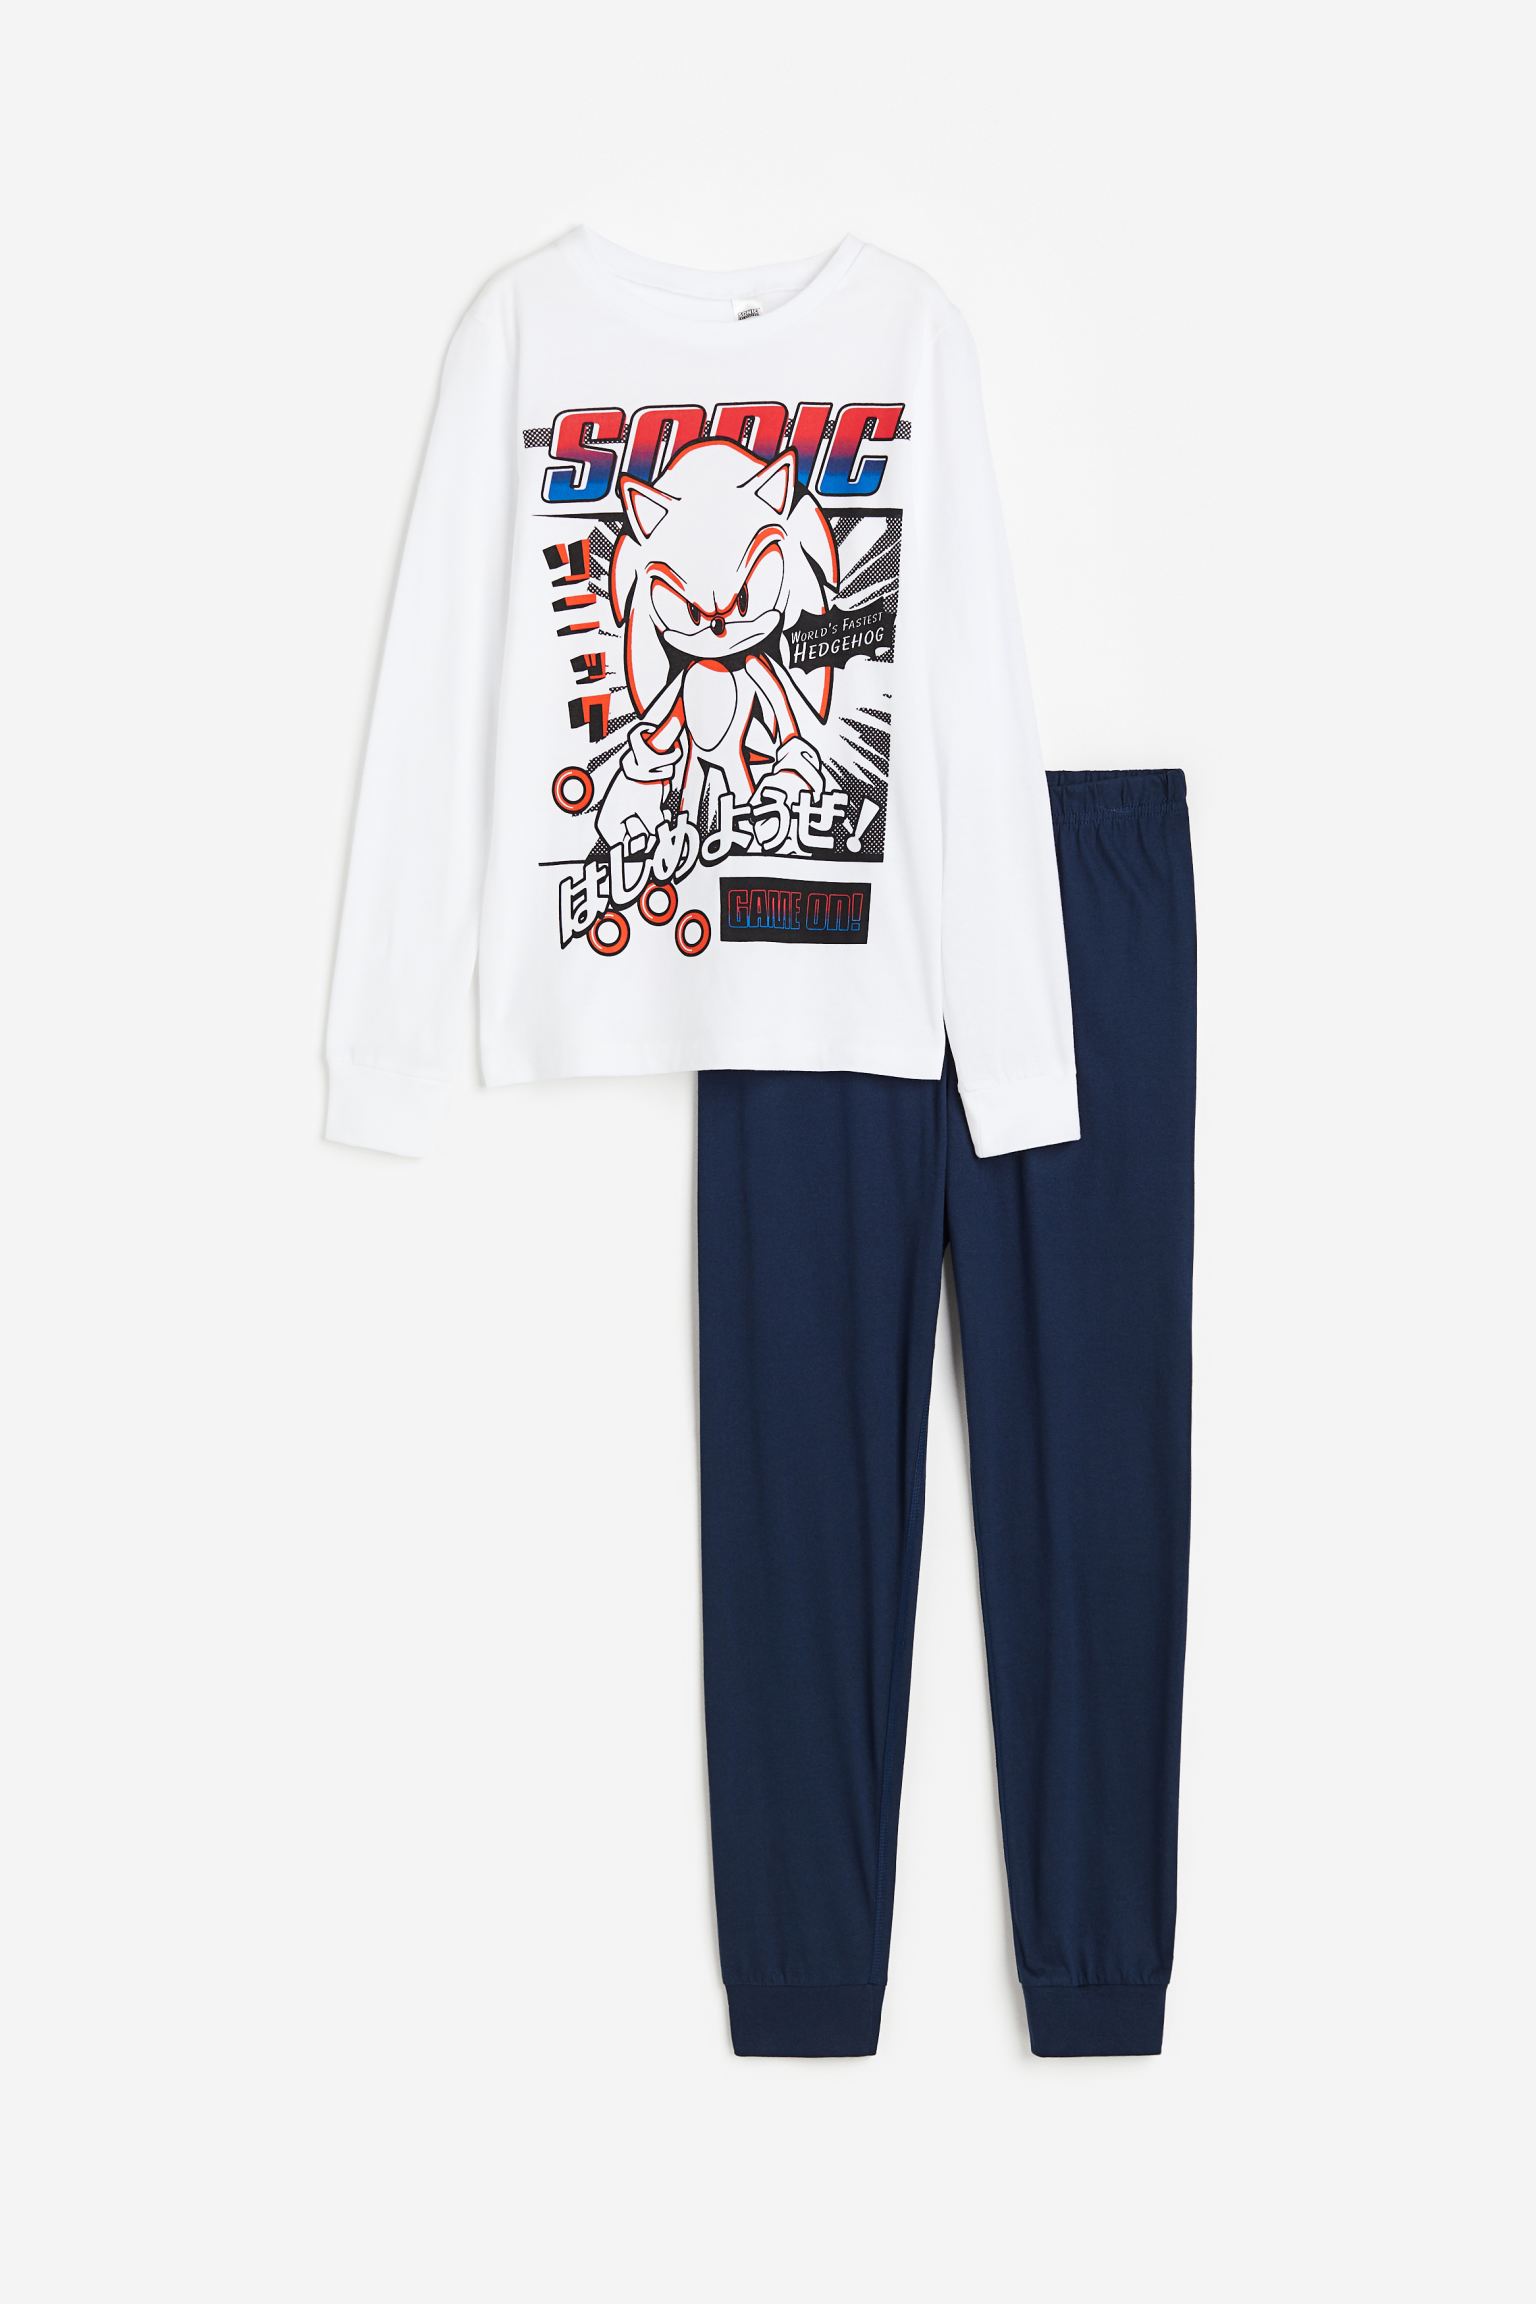 Пижамный комплект H&M Kids Jersey Sonic the Hedgehog, 2 предмета, белый пижама let s go брюки джемпер брюки с манжетами рукава с манжетами пояс на резинке манжеты без карманов размер 122 64 мультиколор